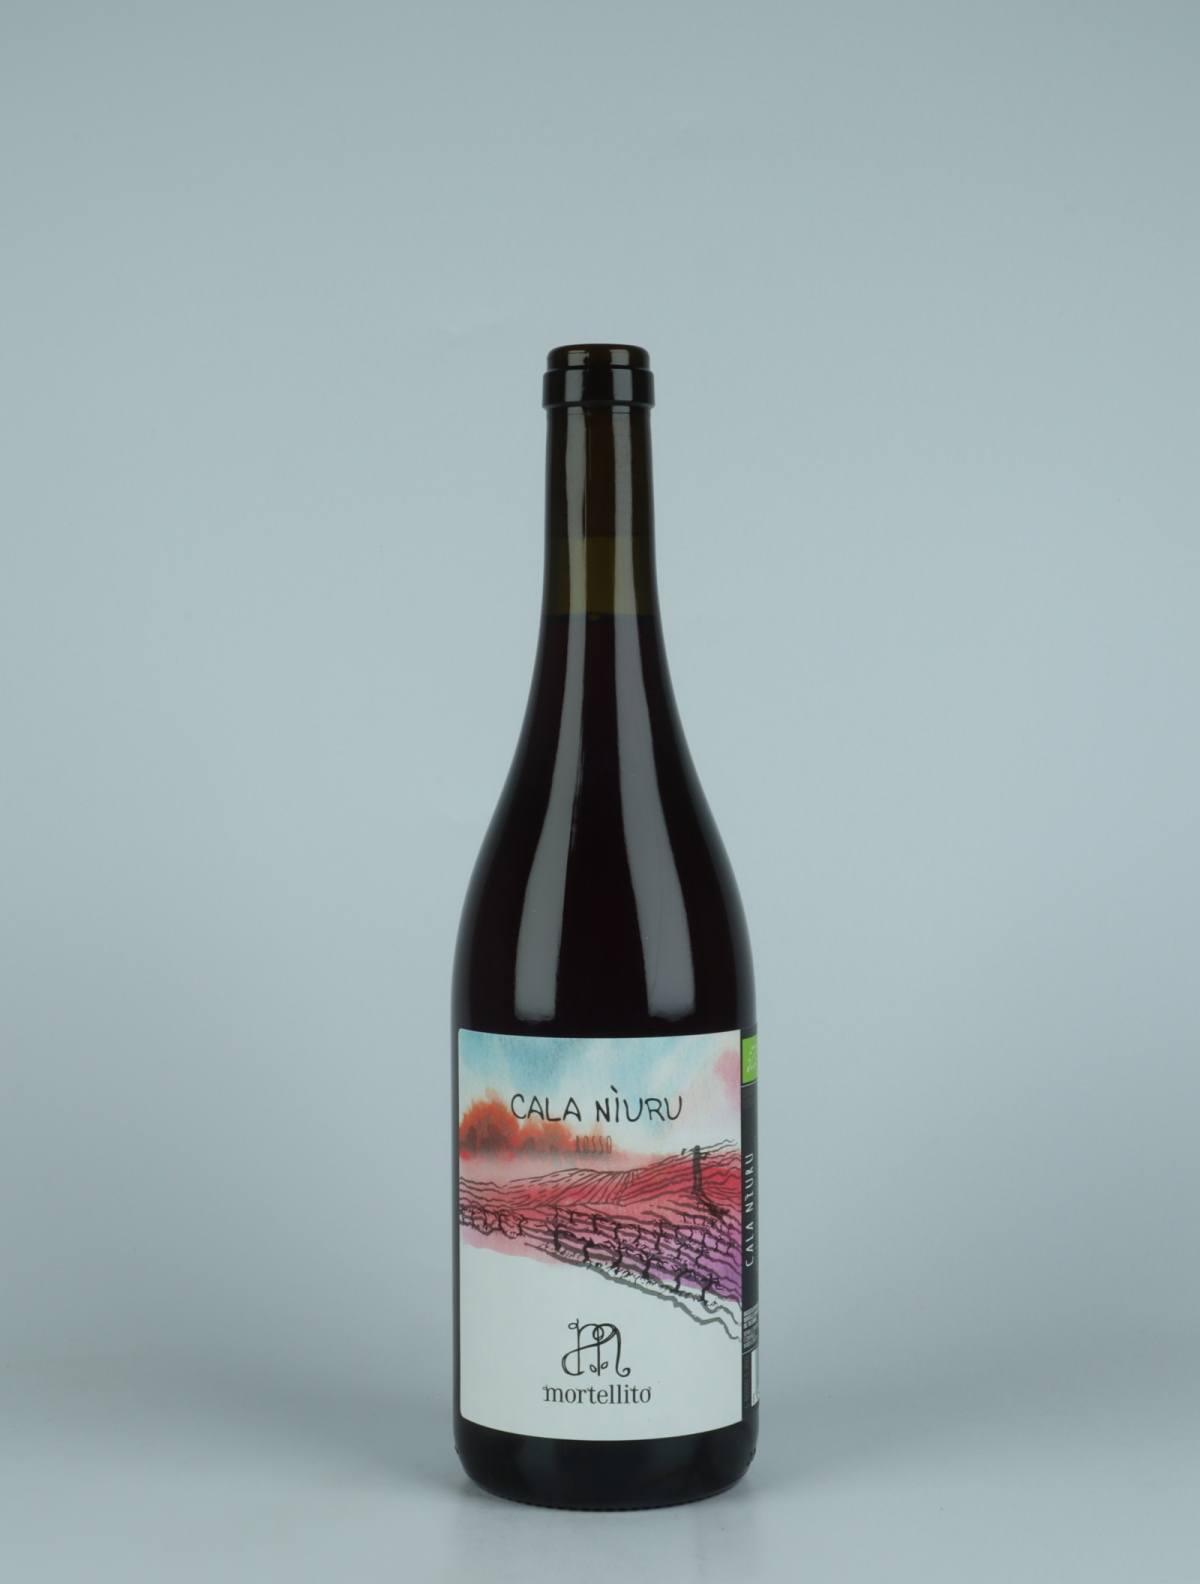 A bottle 2022 Cala Niuru - Rosso Red wine from Il Mortellito, Sicily in Italy